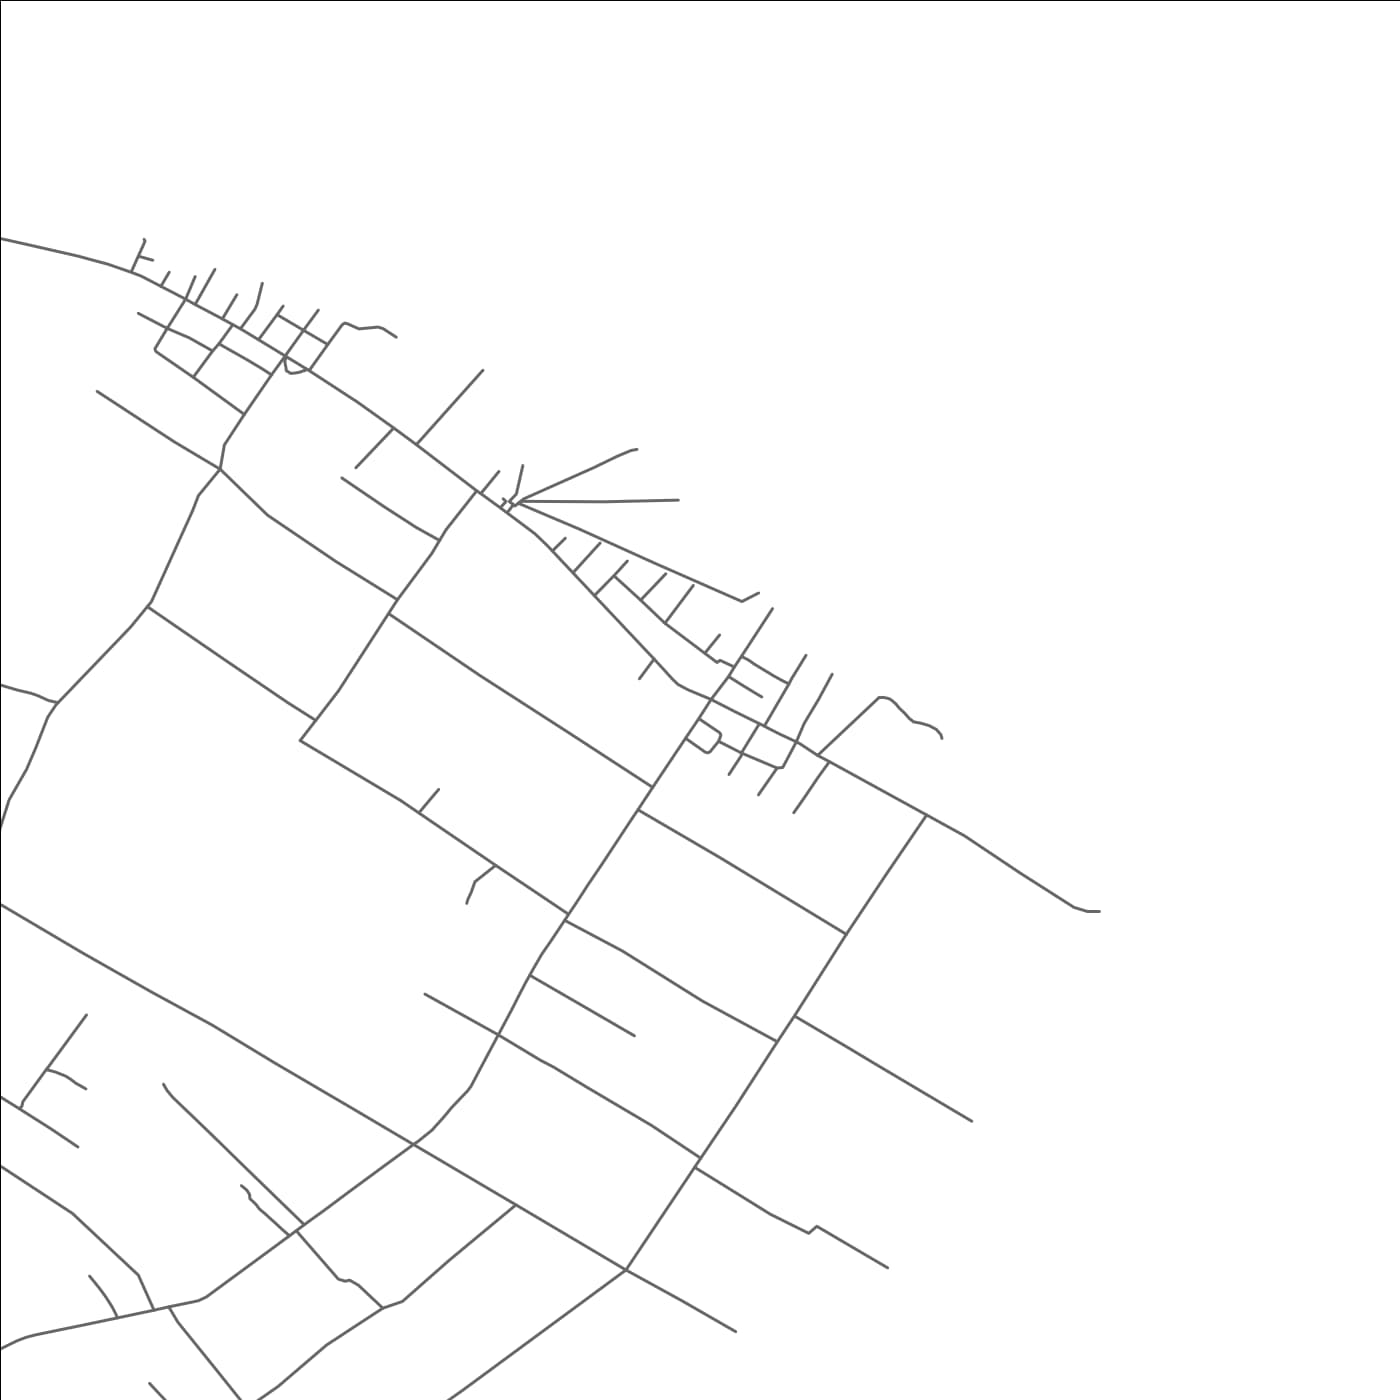 ROAD MAP OF NIUTOUA, TONGA BY MAPBAKES